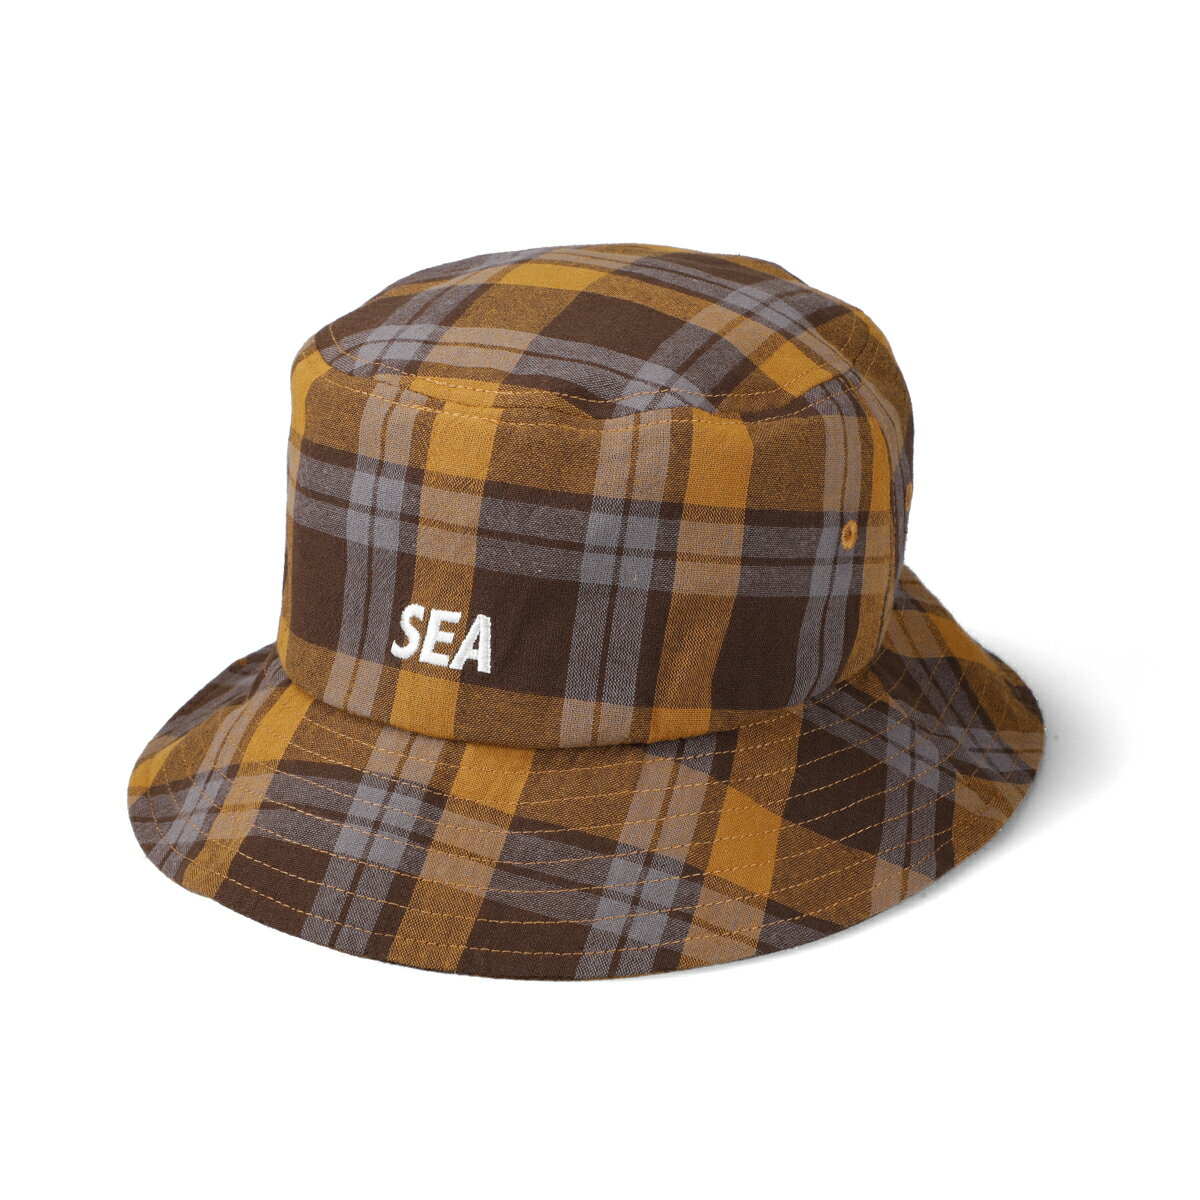 メンズ帽子, ハット 21AW WIND AND SEA BE TOUTHE TOWN PLAID HAT BROWN WDS